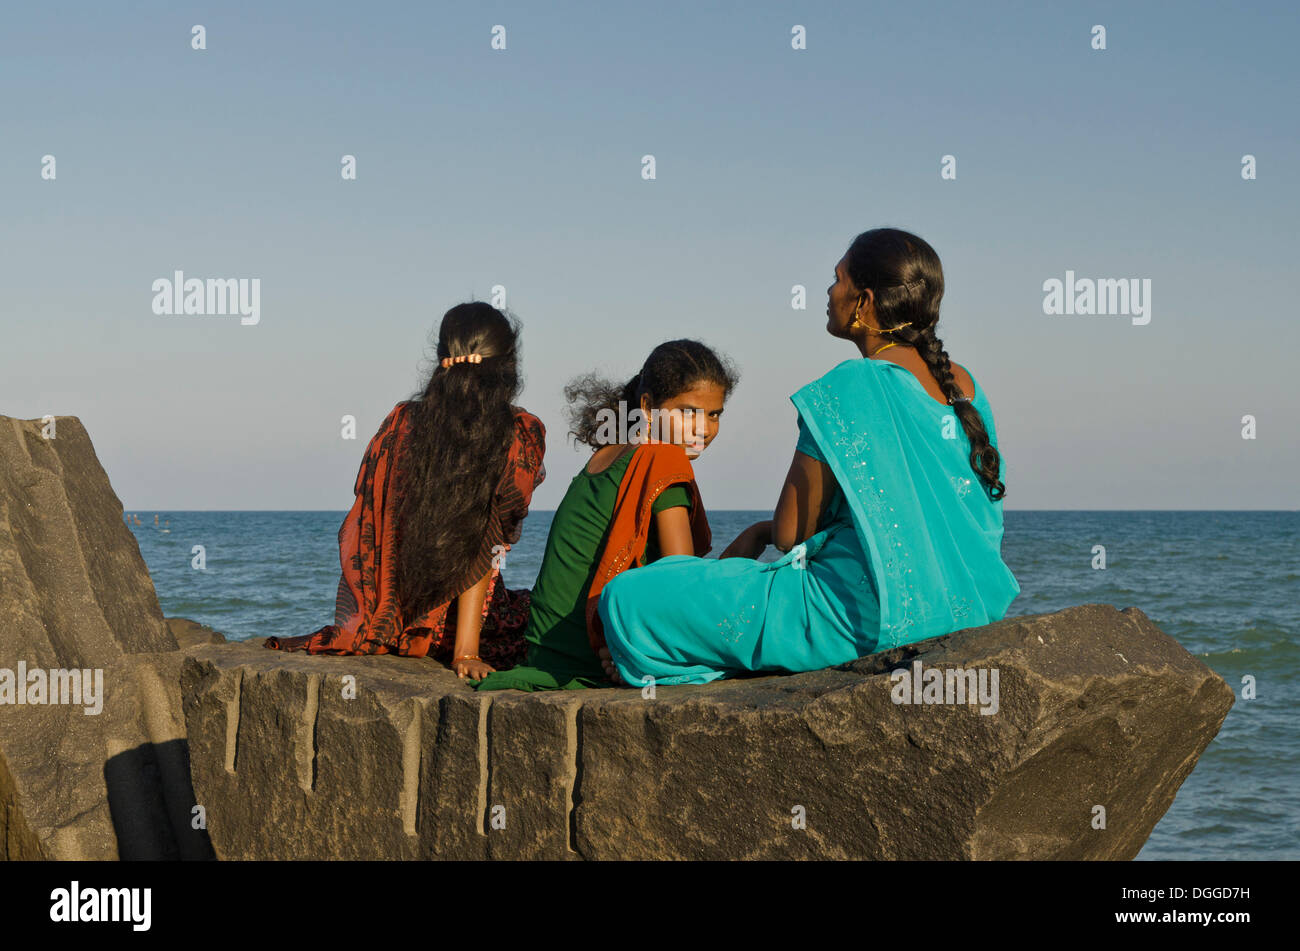 Tres chicas jóvenes sentados sobre una roca en la playa de Pondicherry, mirando al mar, Pondicherry, India, Asia Foto de stock